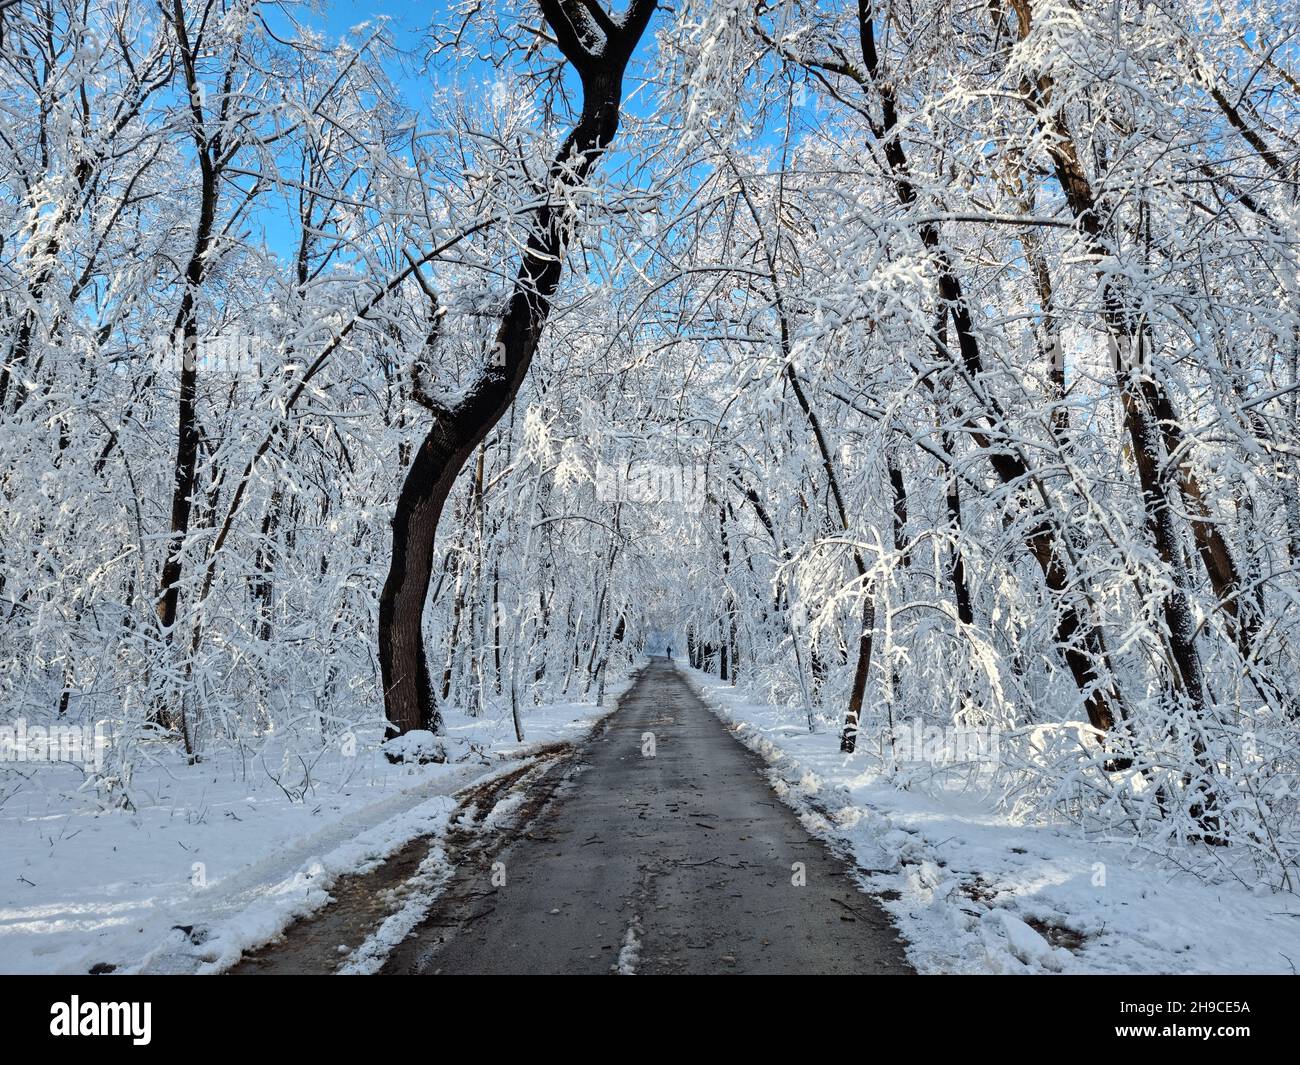 Petite route de campagne étroite dans une forêt enneigée gelée Banque D'Images